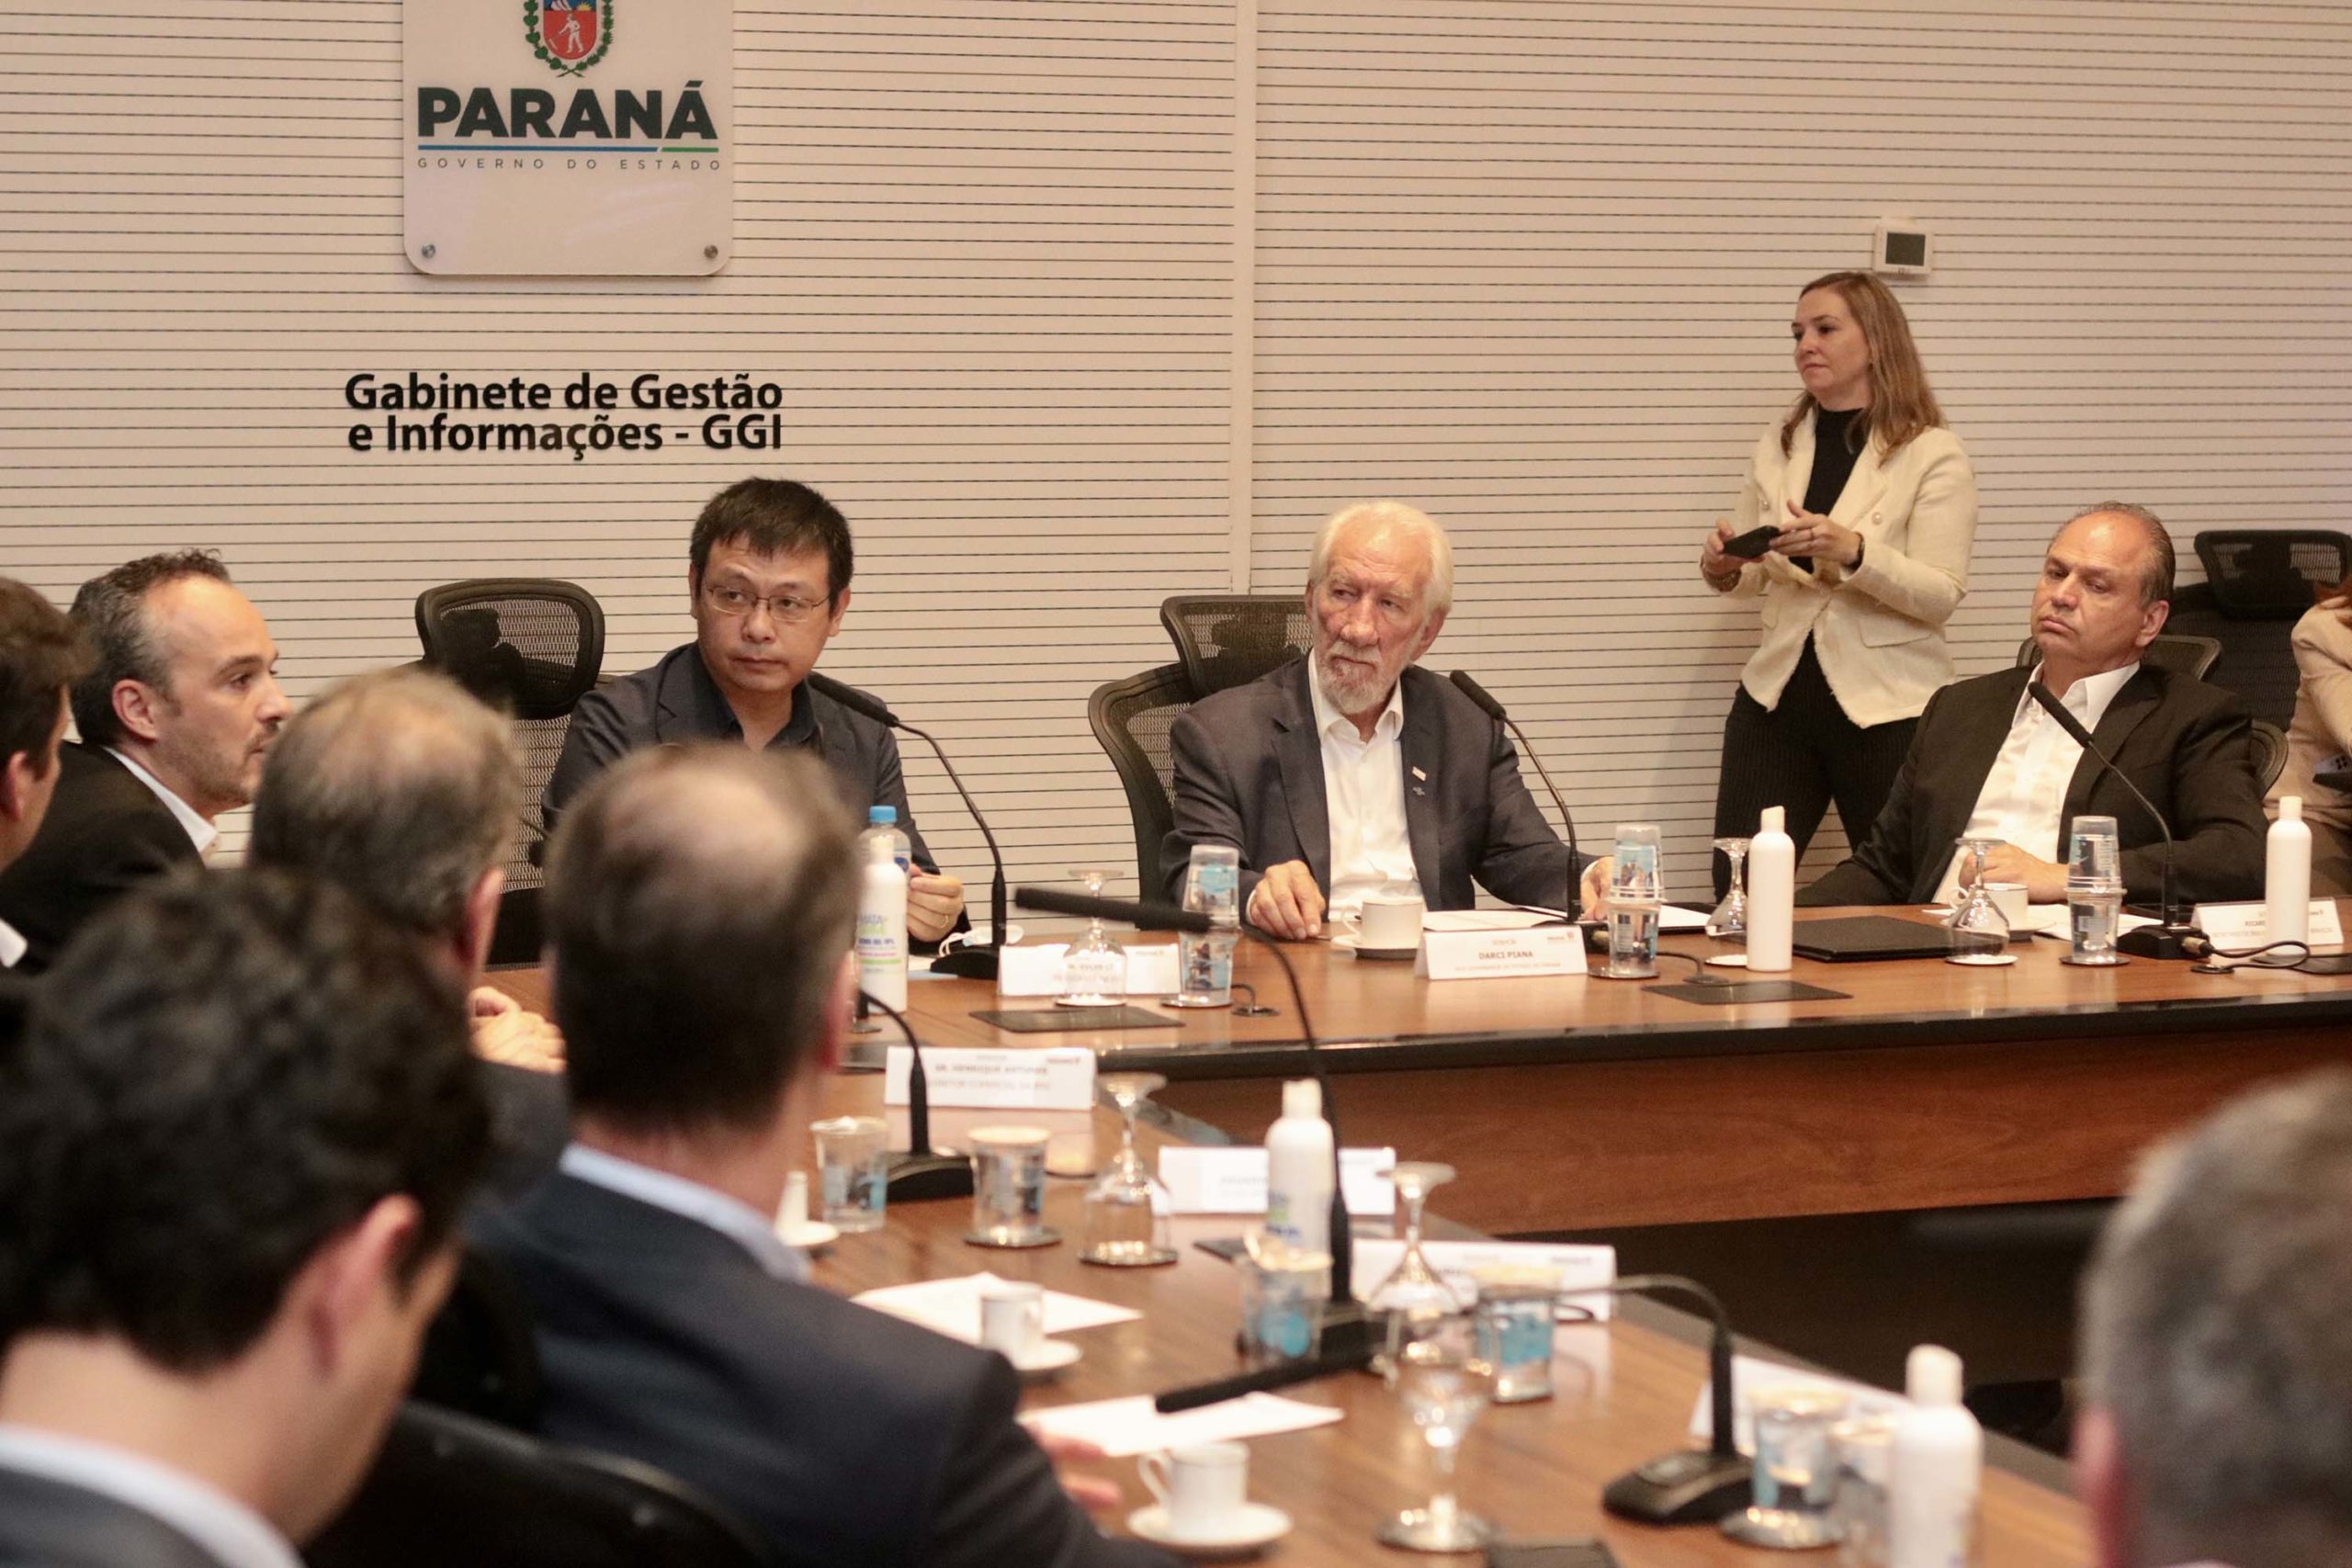 Paraná tenta atrair fábrica de motores elétricos. Na imagem: executivos da BYD são recebidos pelo governo do Paraná, interessado em fábrica de motores (Foto: Camila Tonett/GVG)